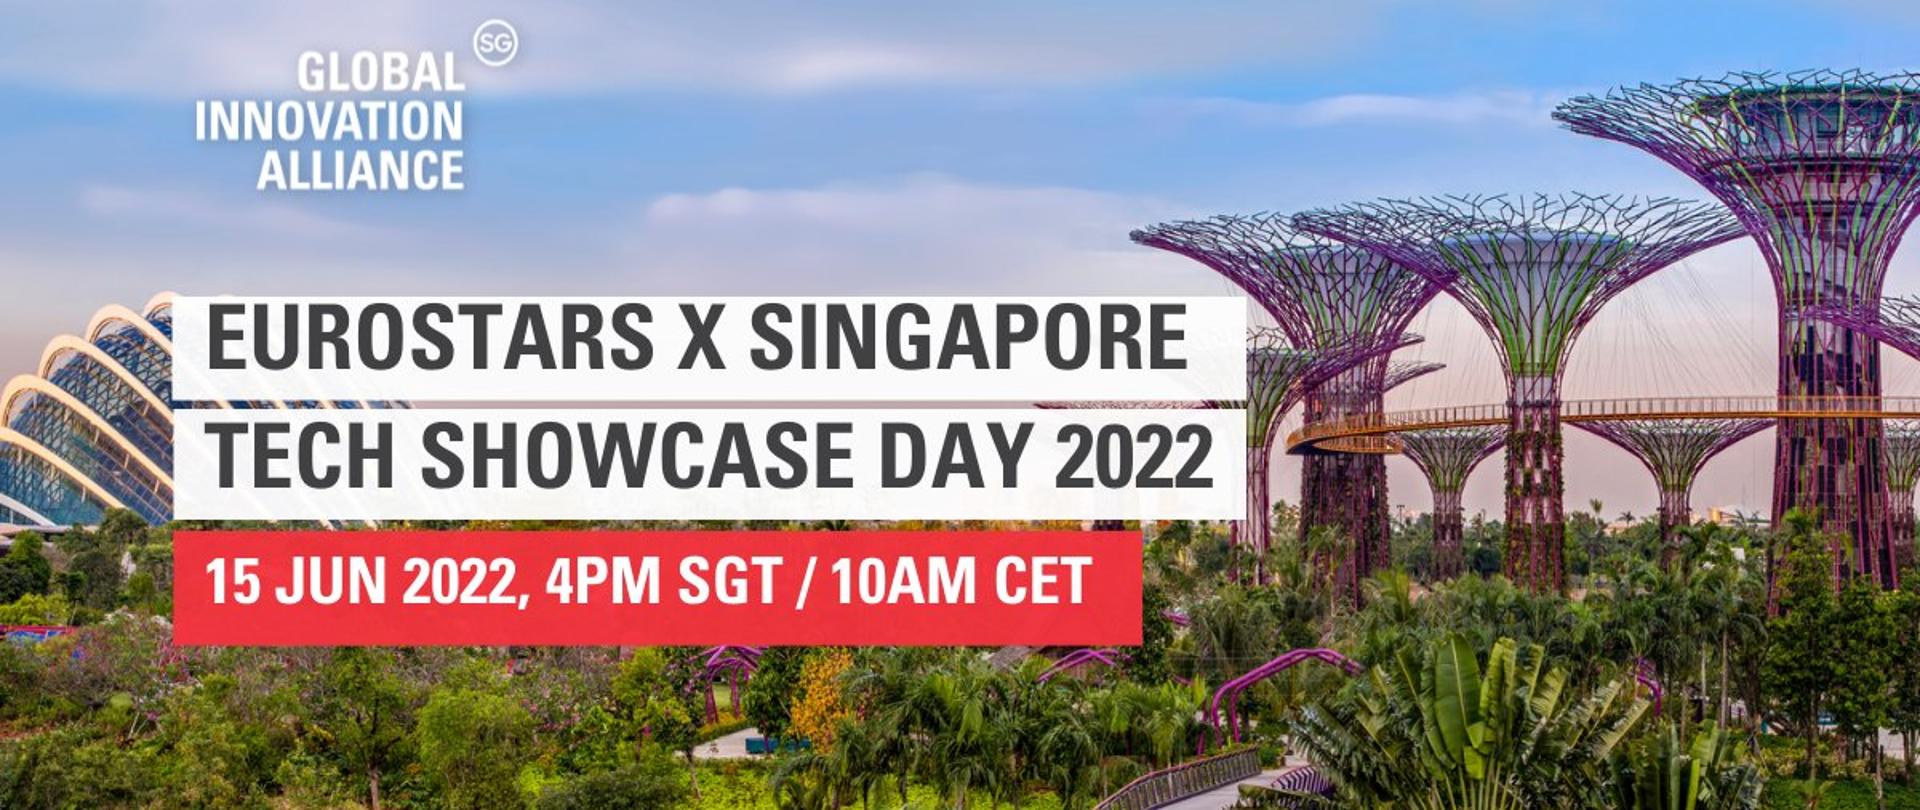 the Eurostars X Singapore Tech Showcase Day 